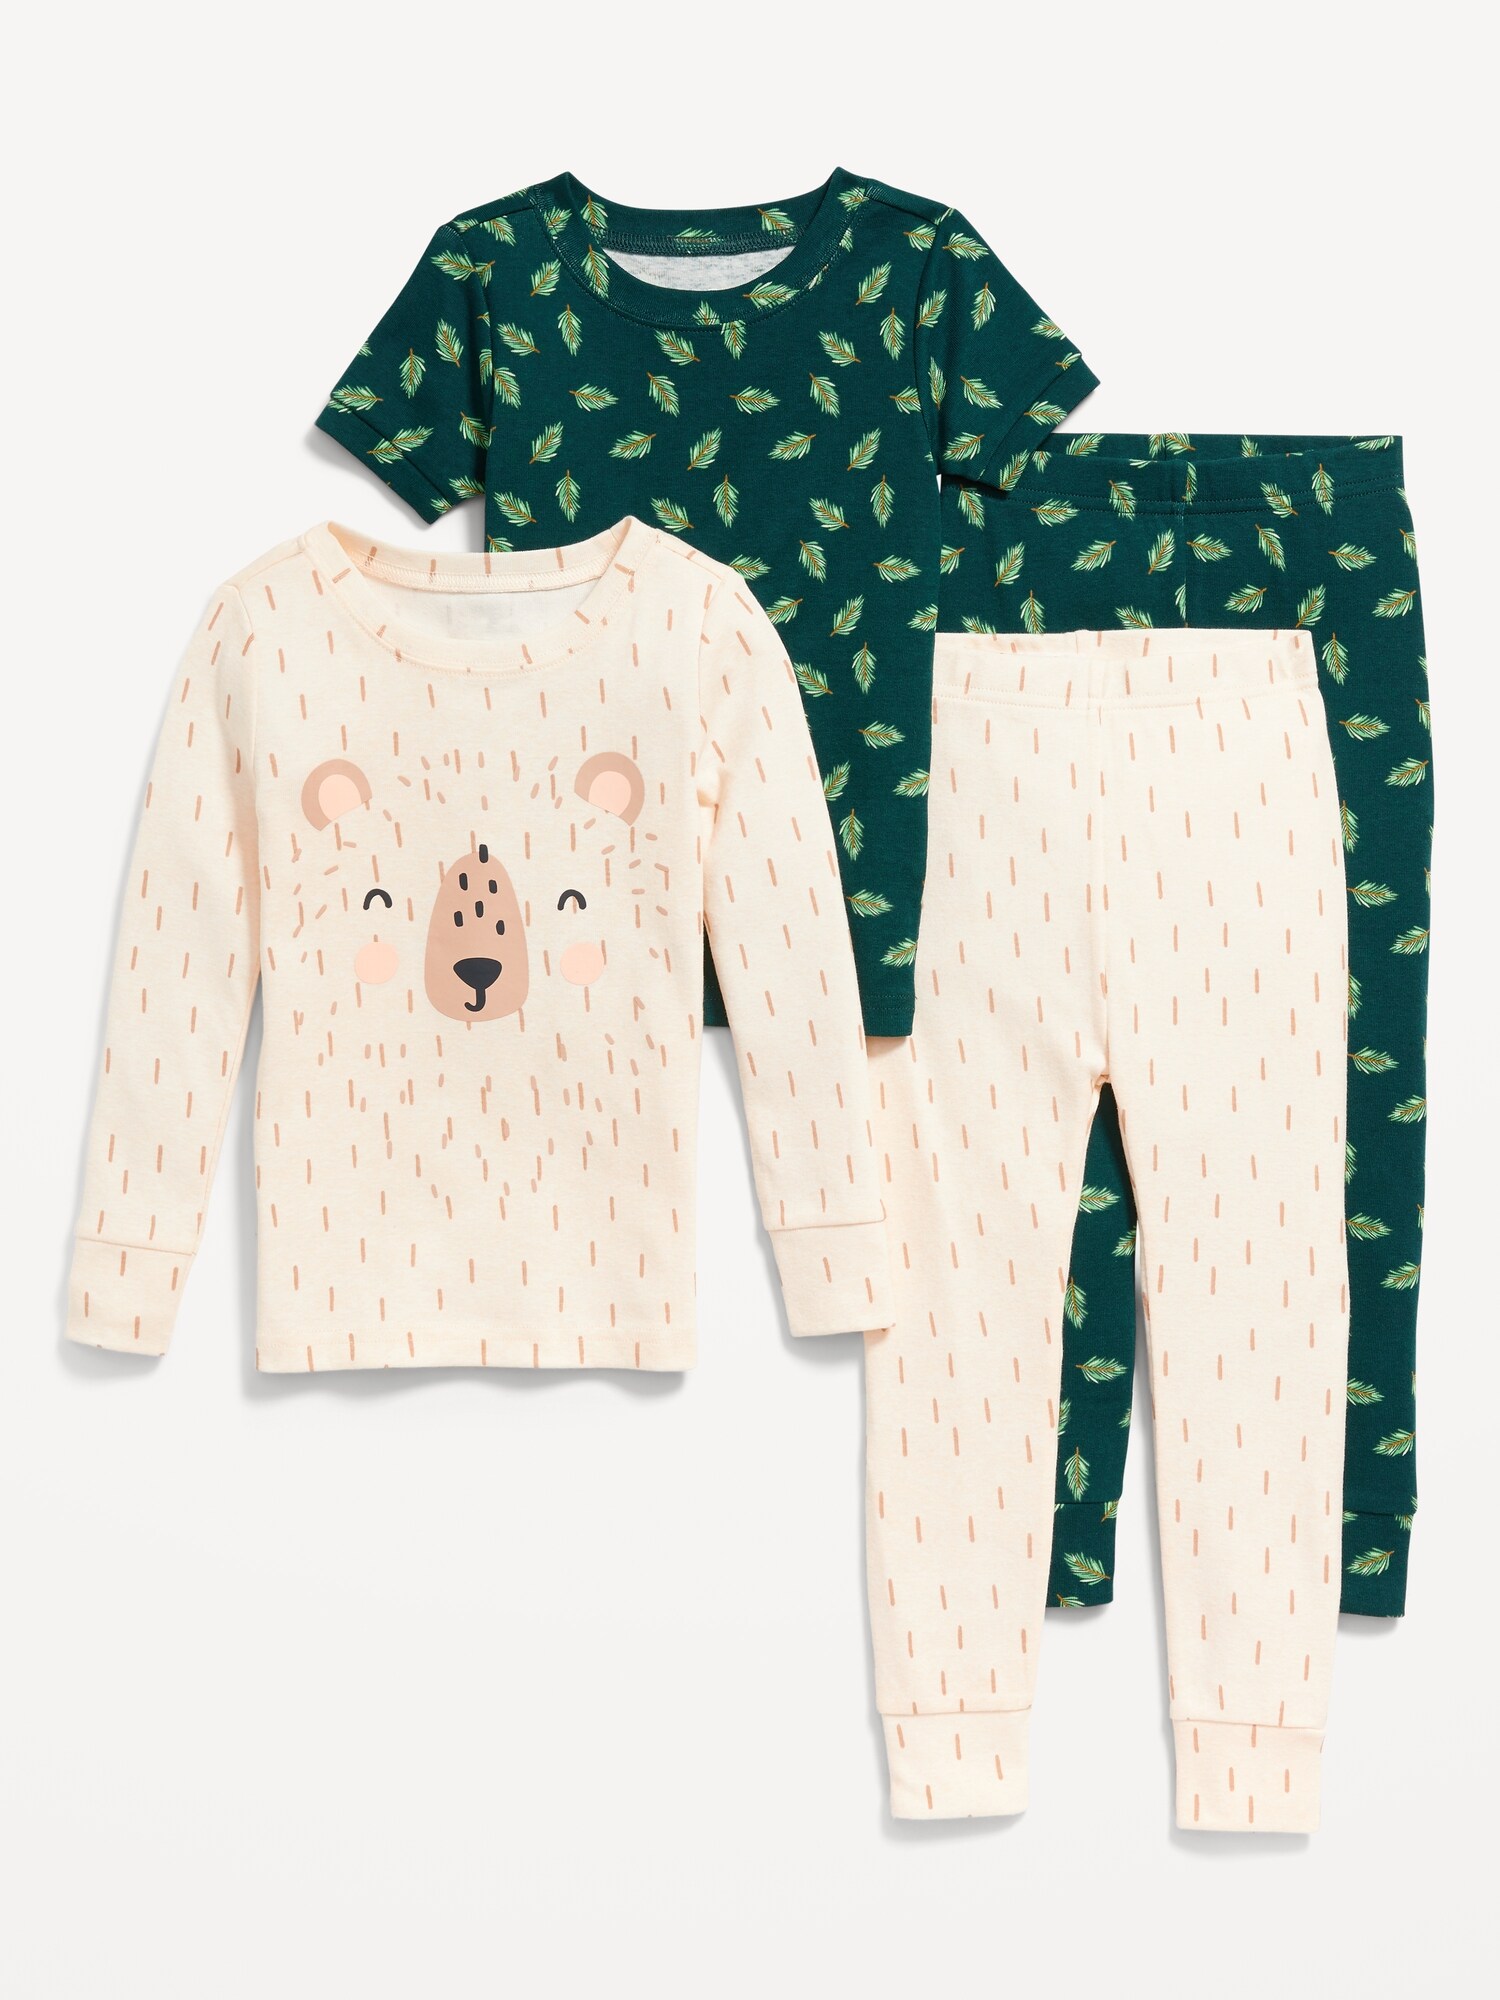 Oldnavy Unisex 4-Piece Snug-Fit Pajama Set for Toddler & Baby Hot Deal